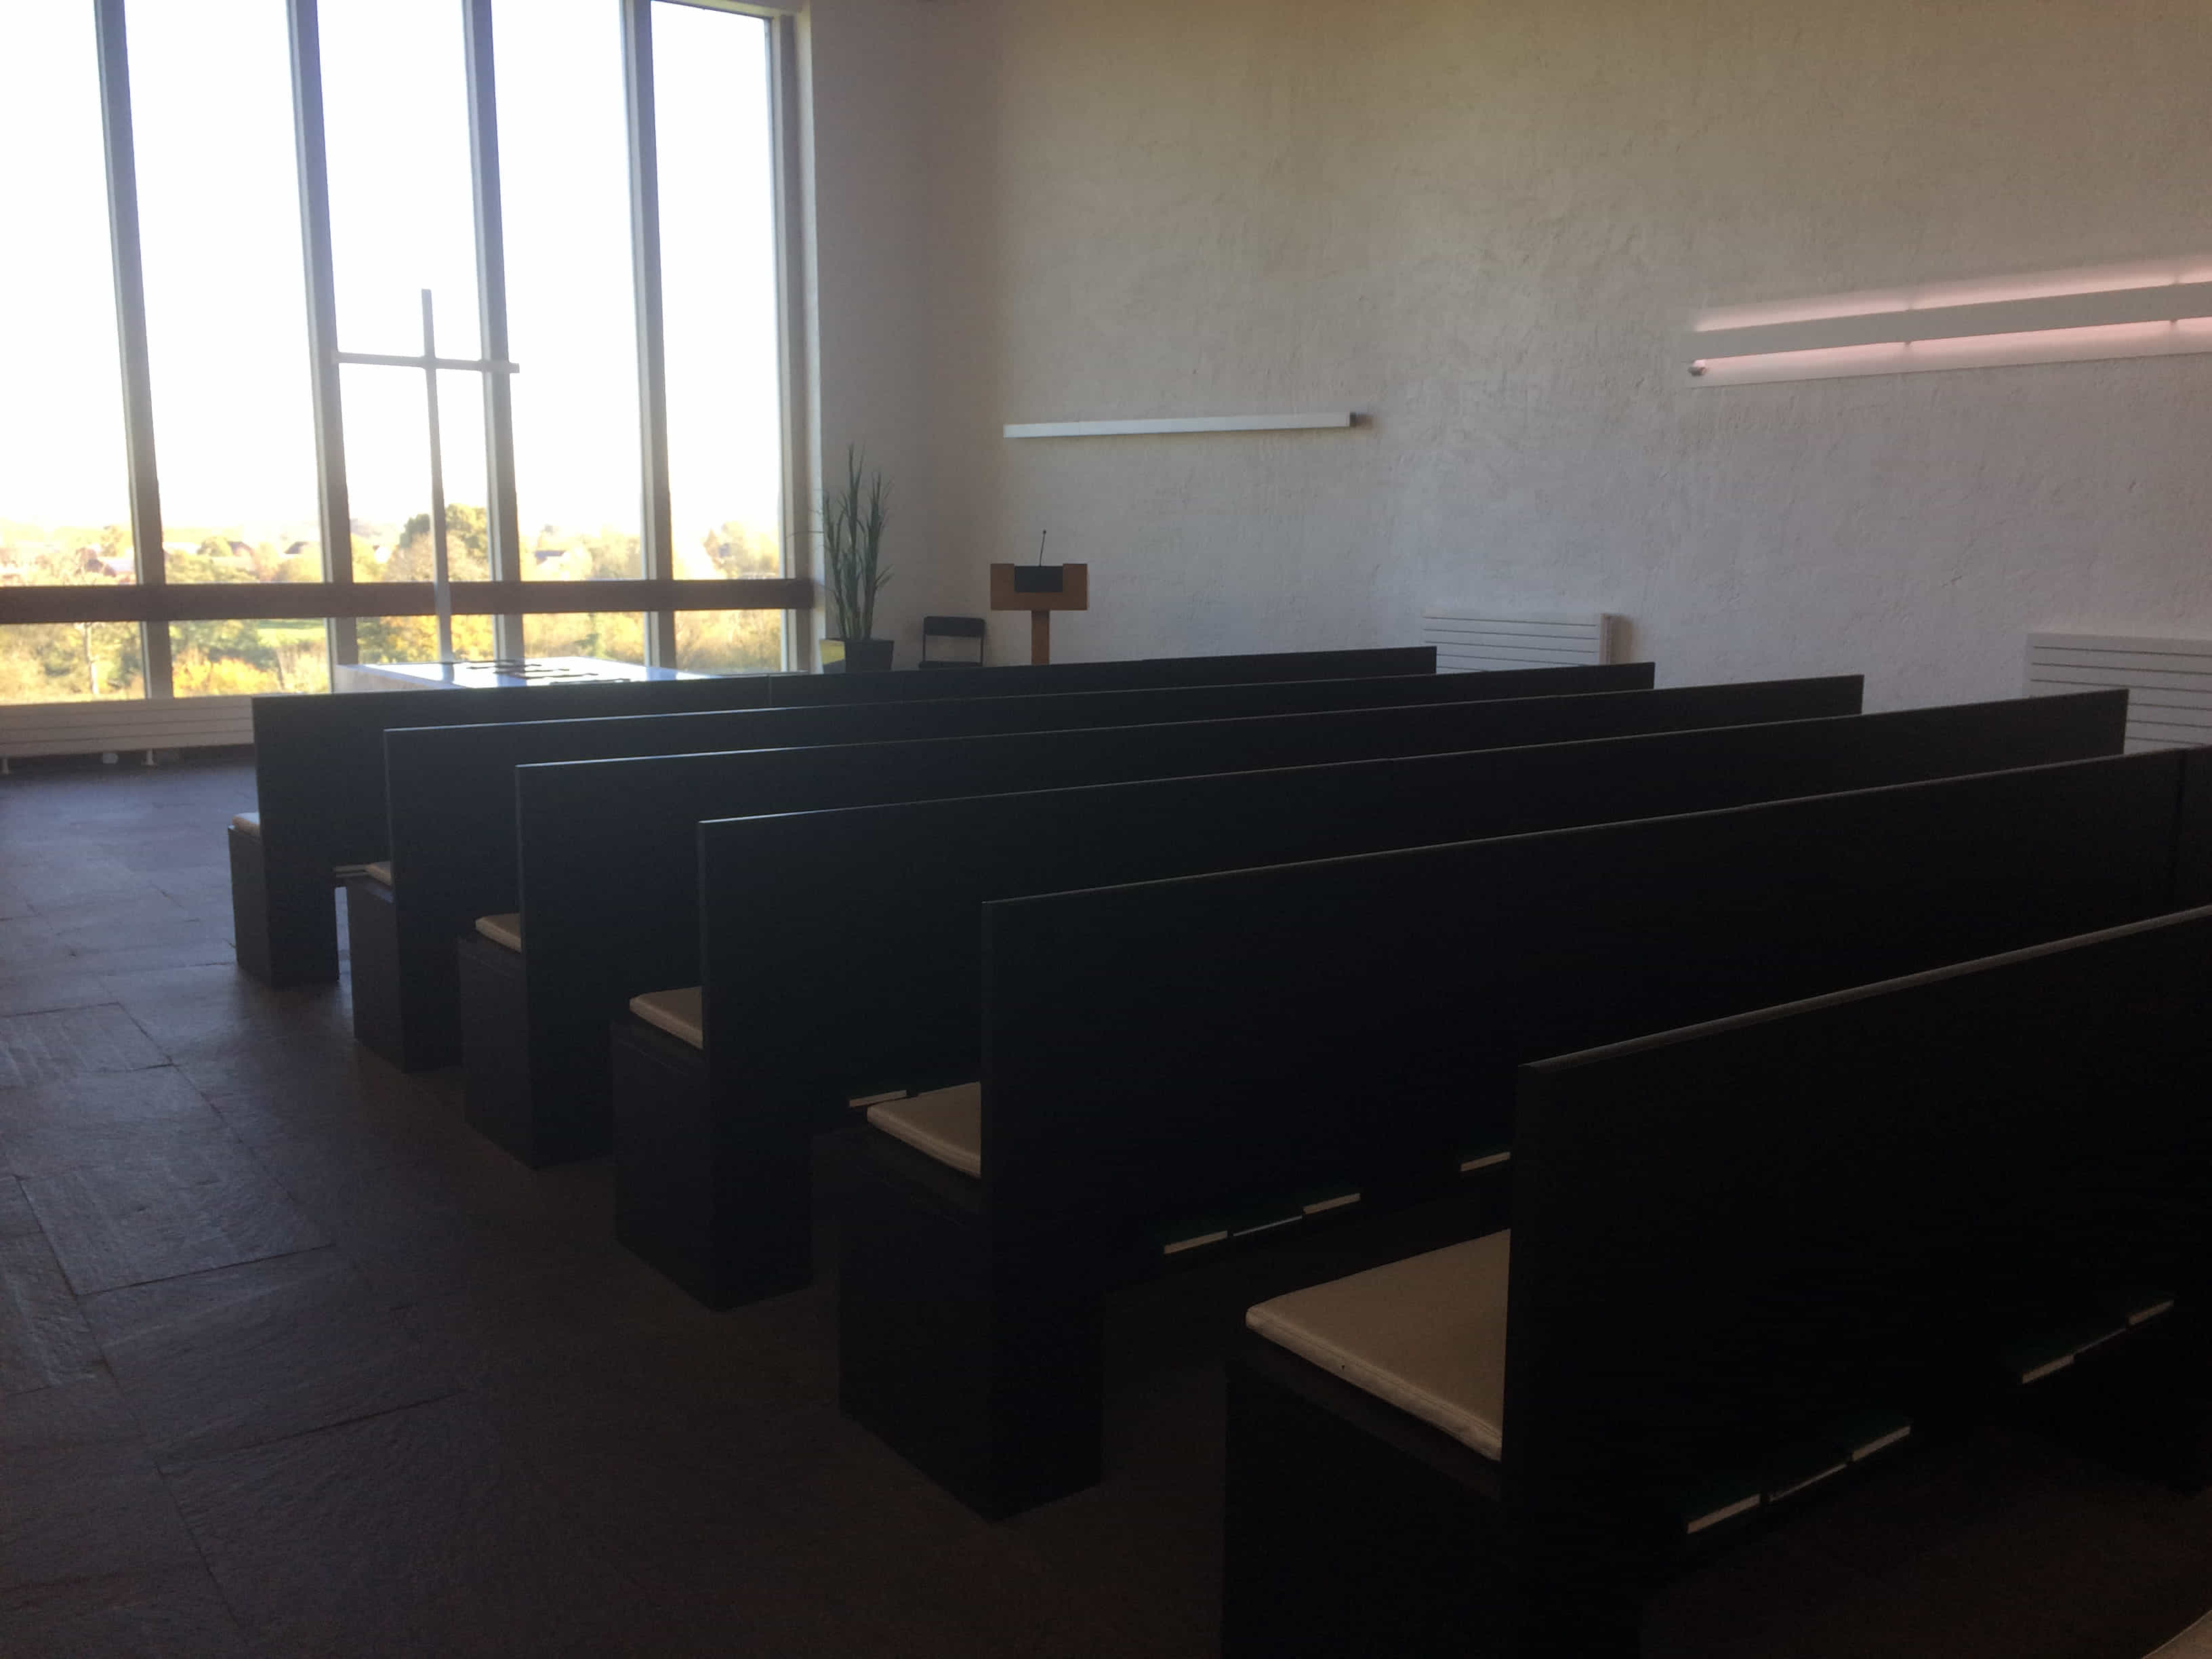 Redditch Crematorium expands range of funeral tribute options